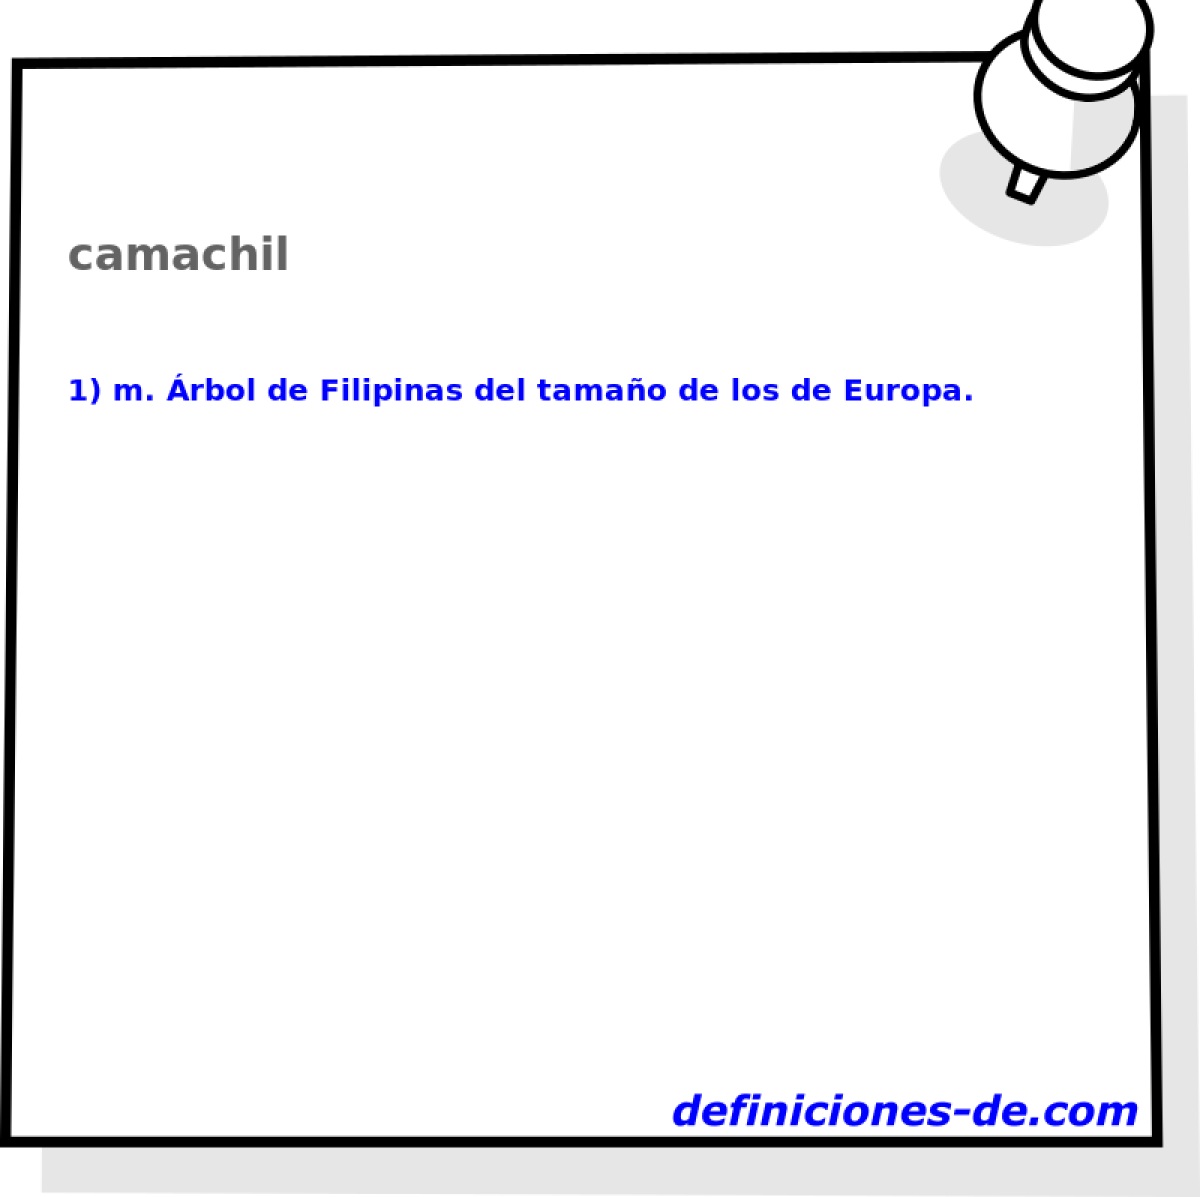 camachil 